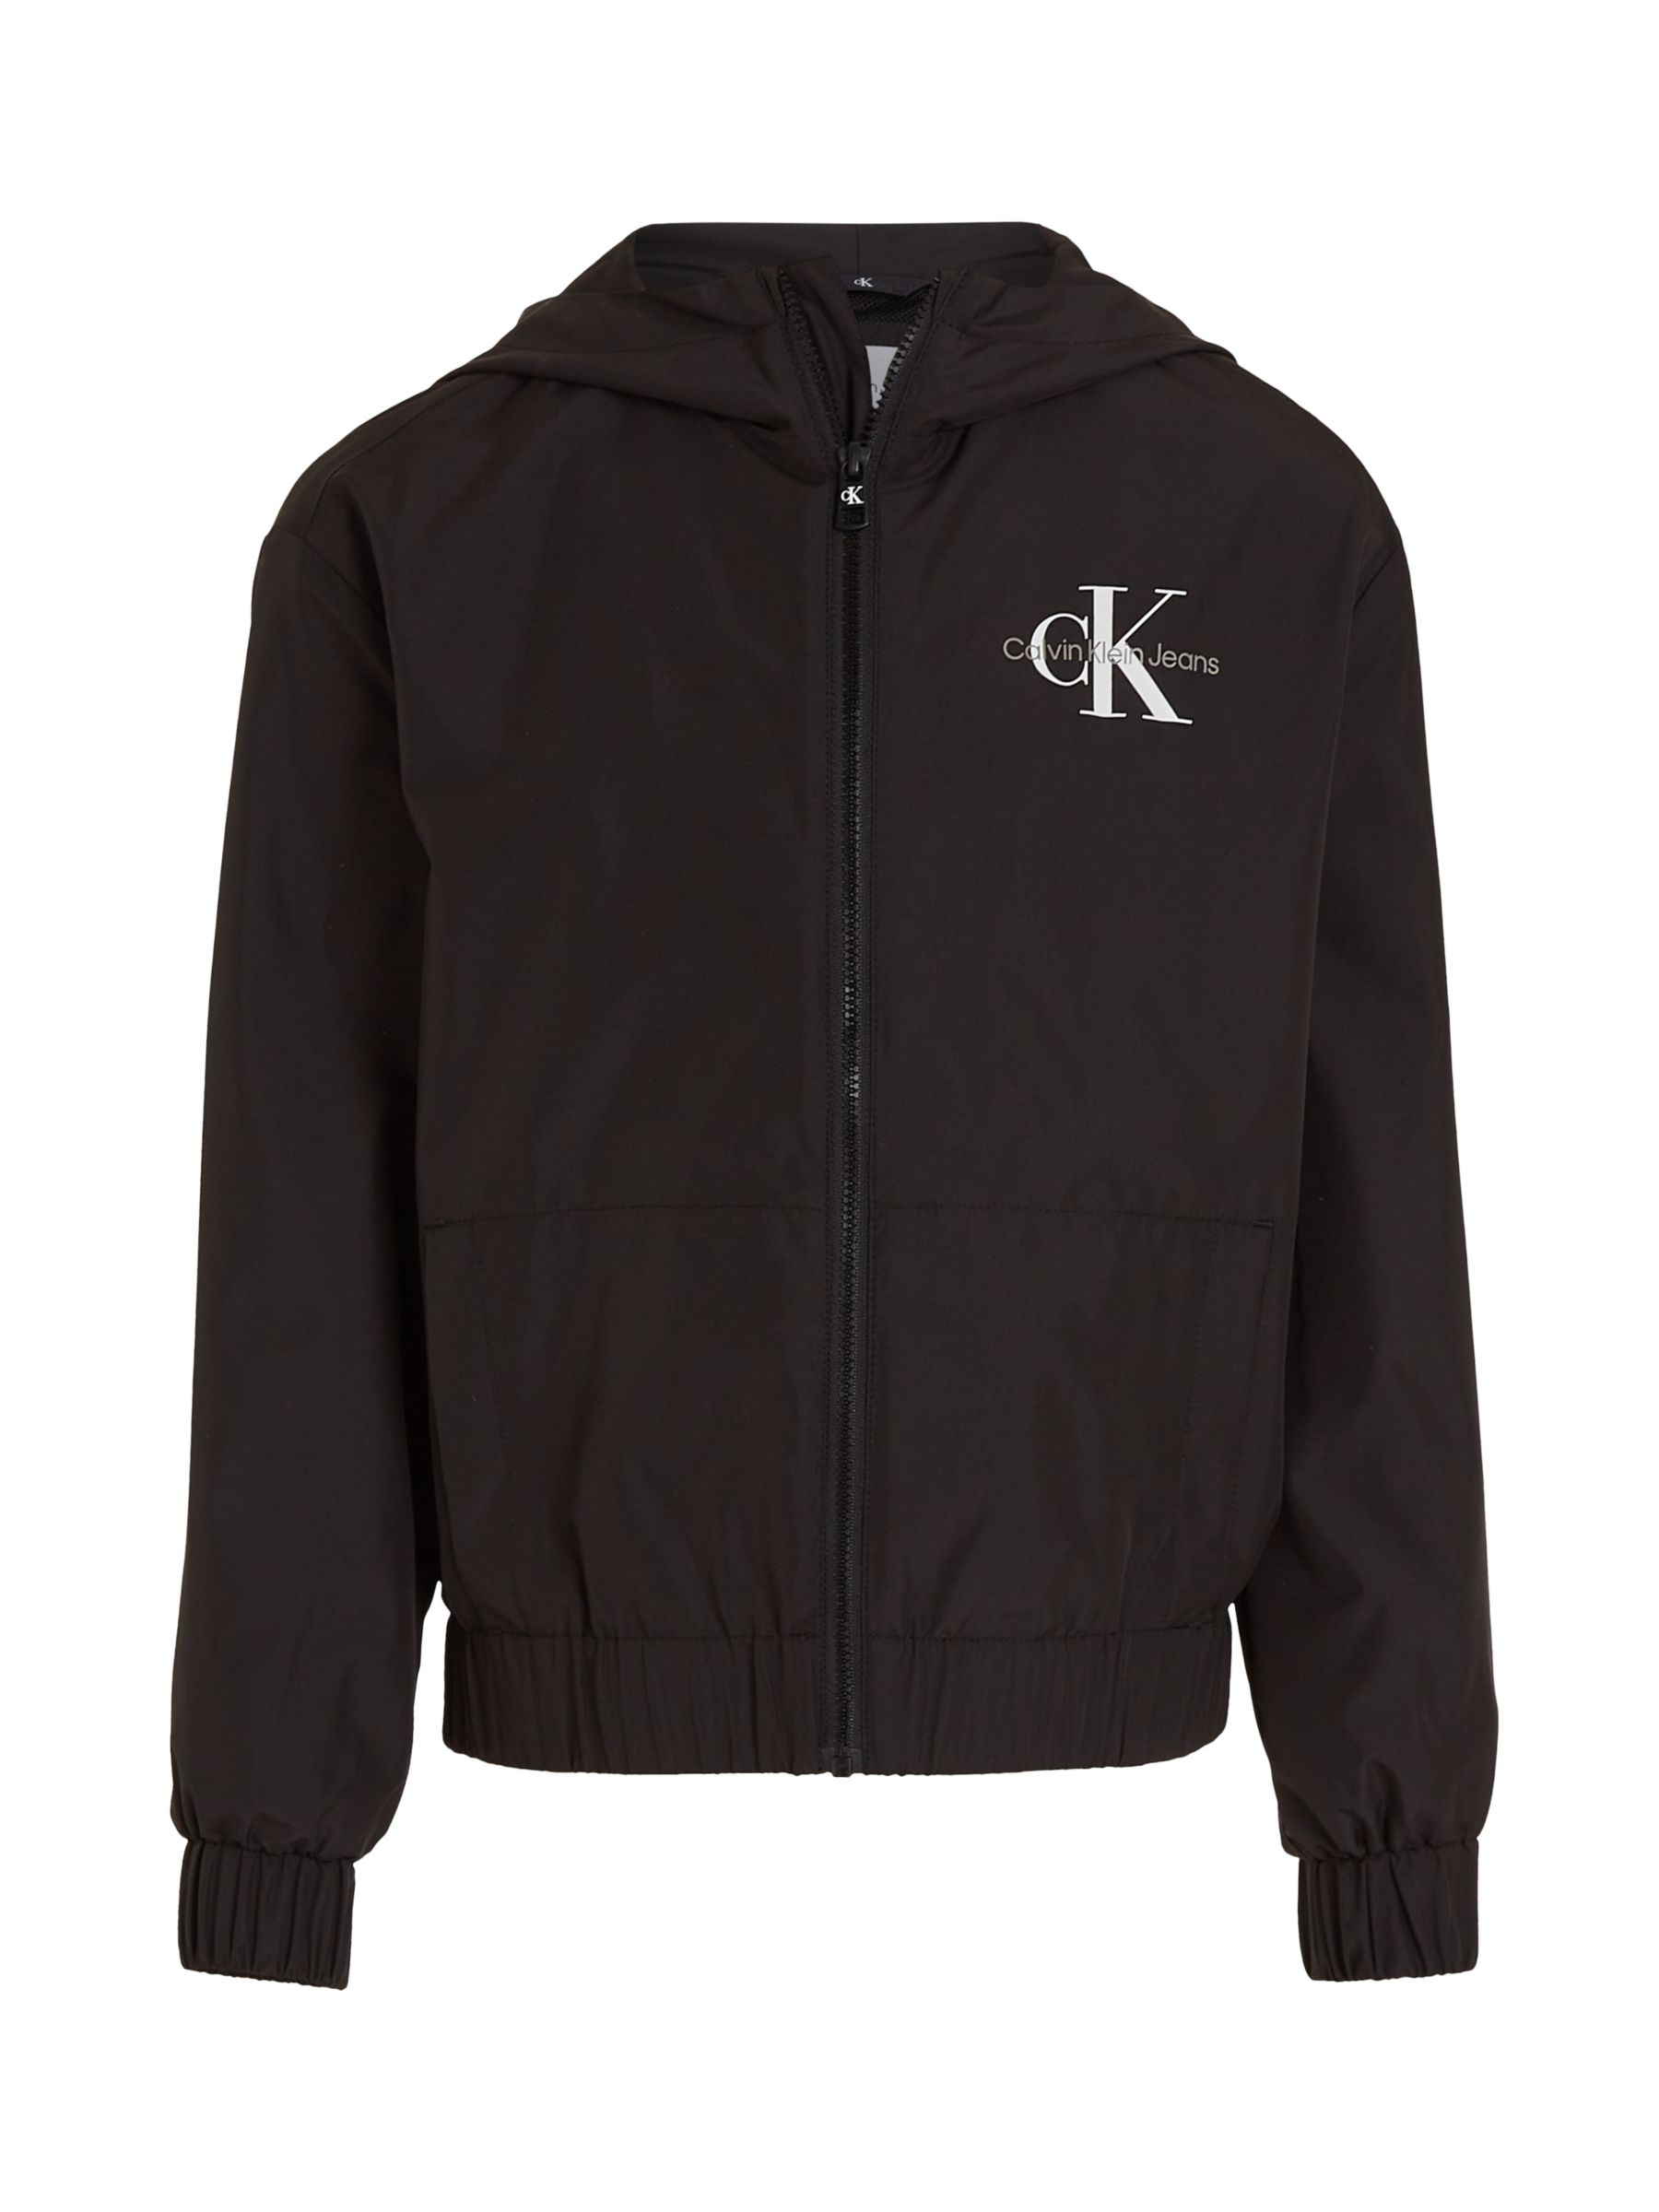 Calvin Klein Kids' Windbreaker Jacket, Black, 10 years